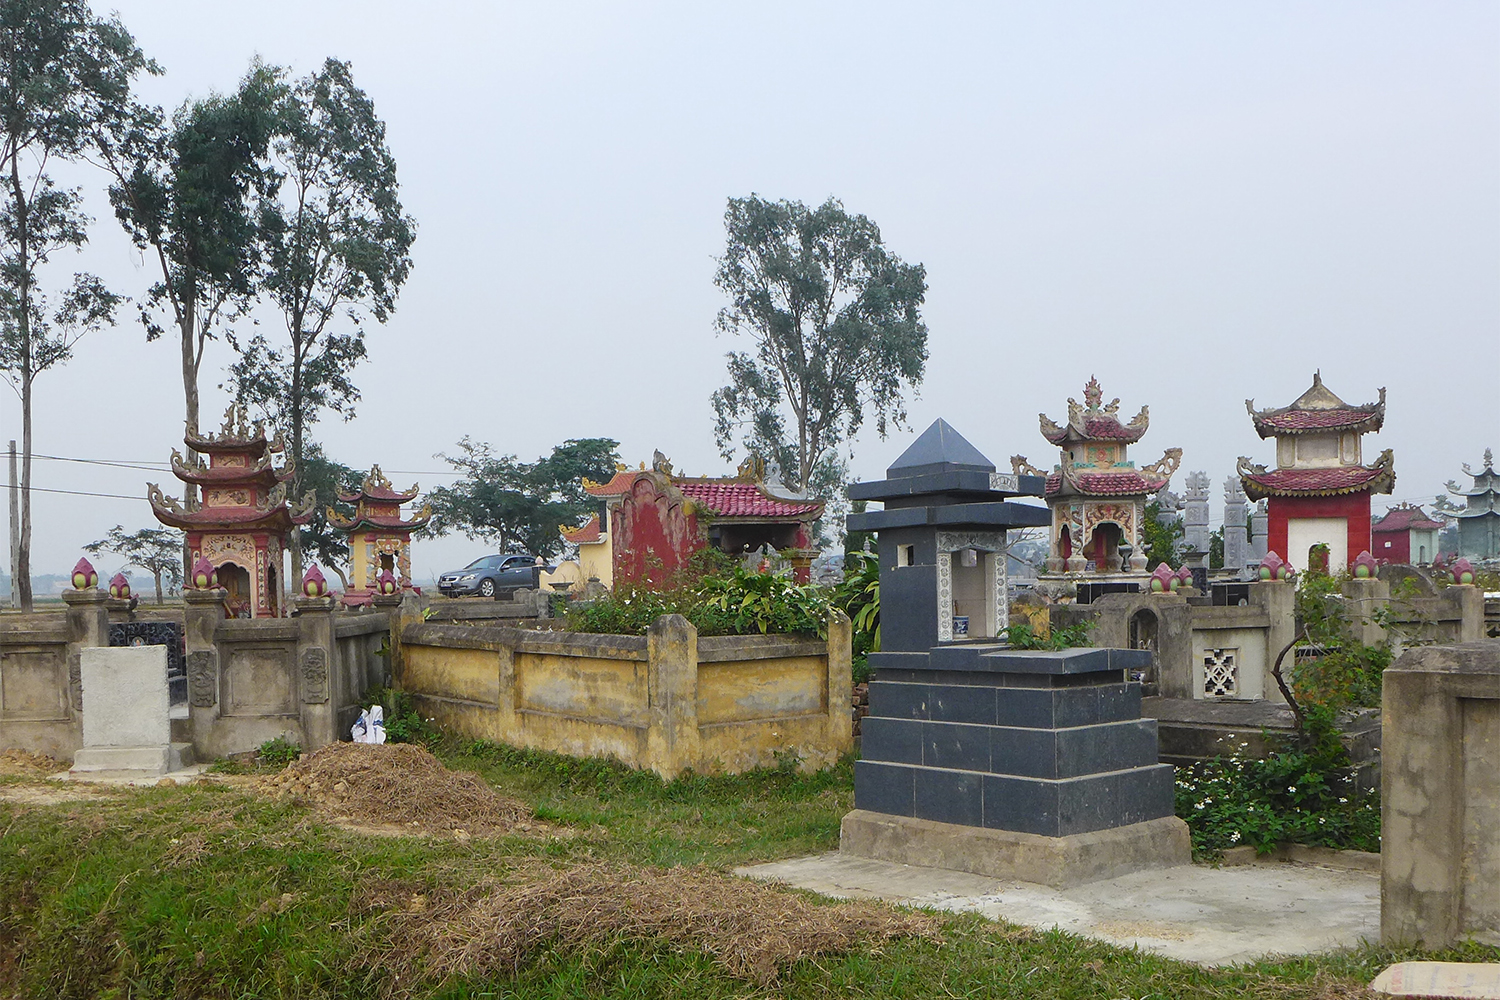 Au cours de ce week-end, nous nous rendons aussi au cimetière, pour nous recueillir sur la tombe des proches d’Hao aujourd’hui disparus